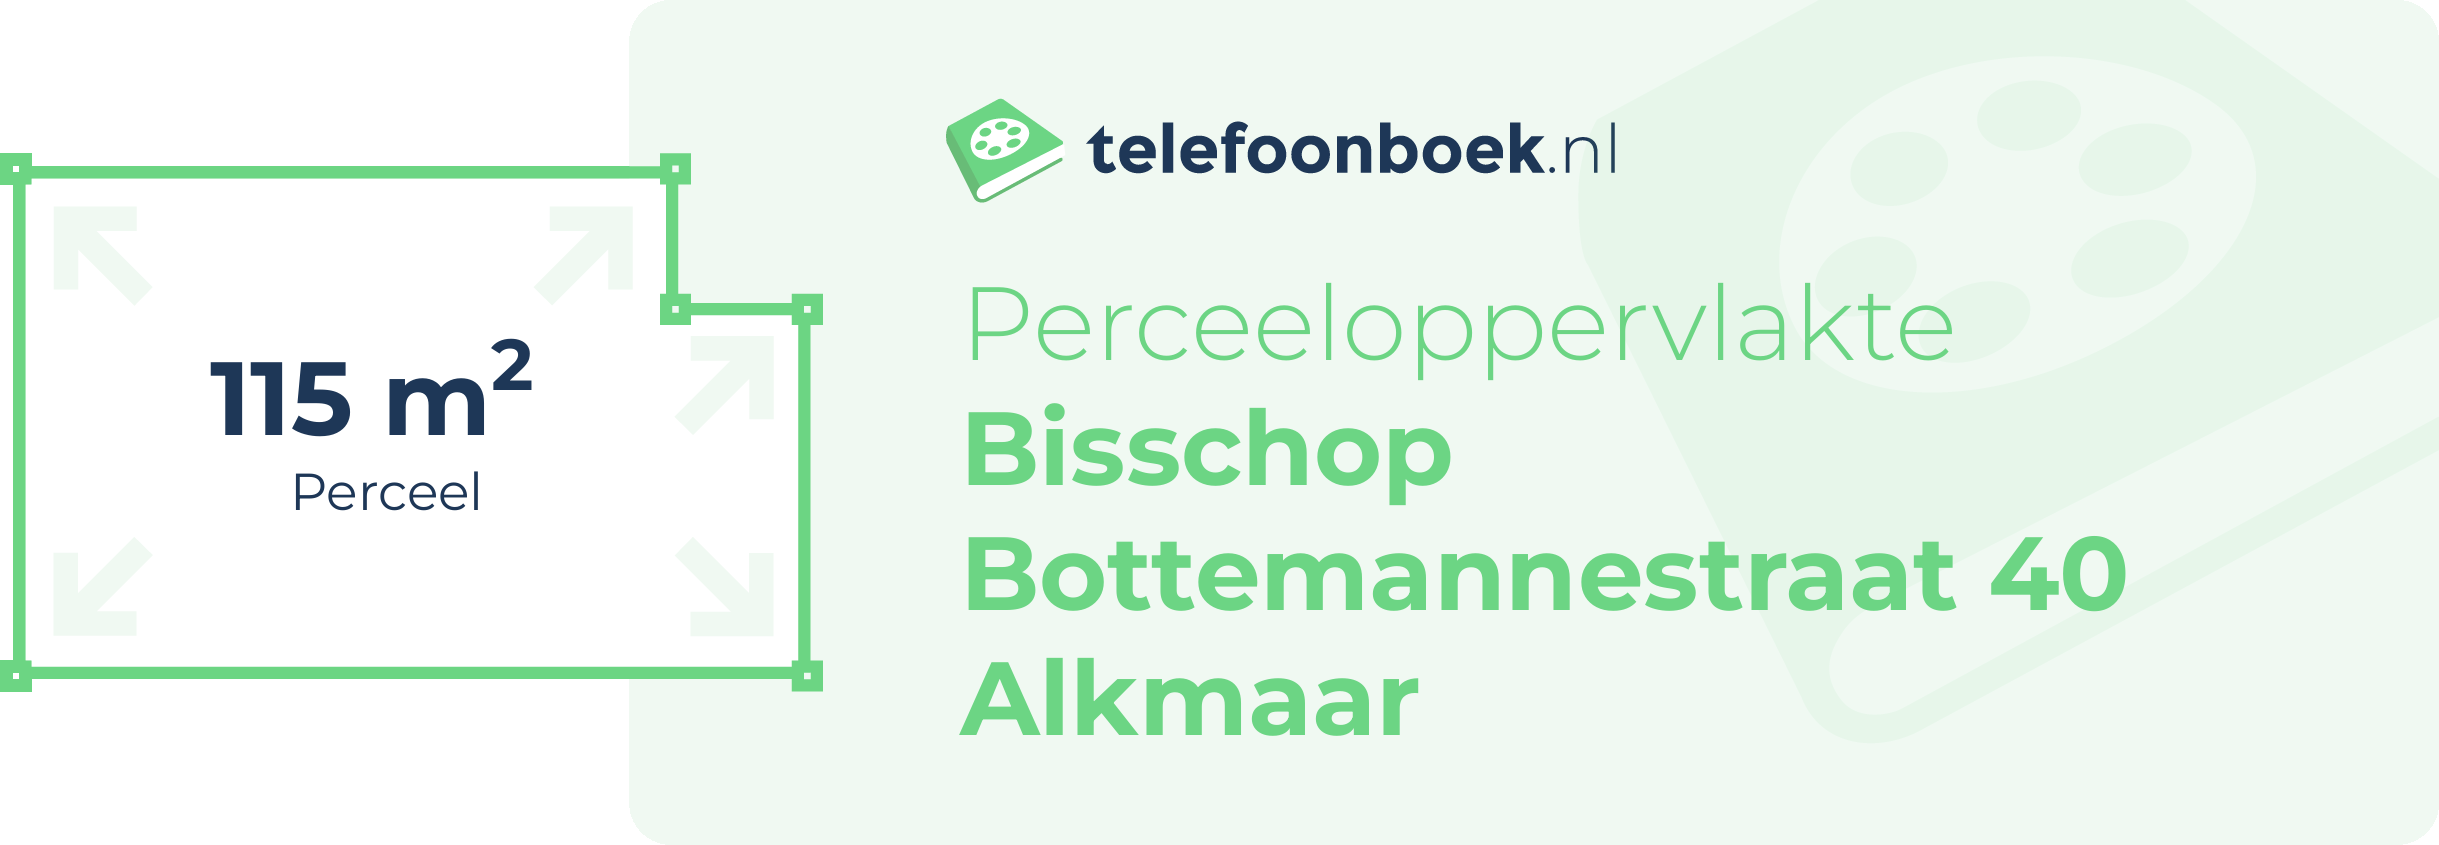 Perceeloppervlakte Bisschop Bottemannestraat 40 Alkmaar